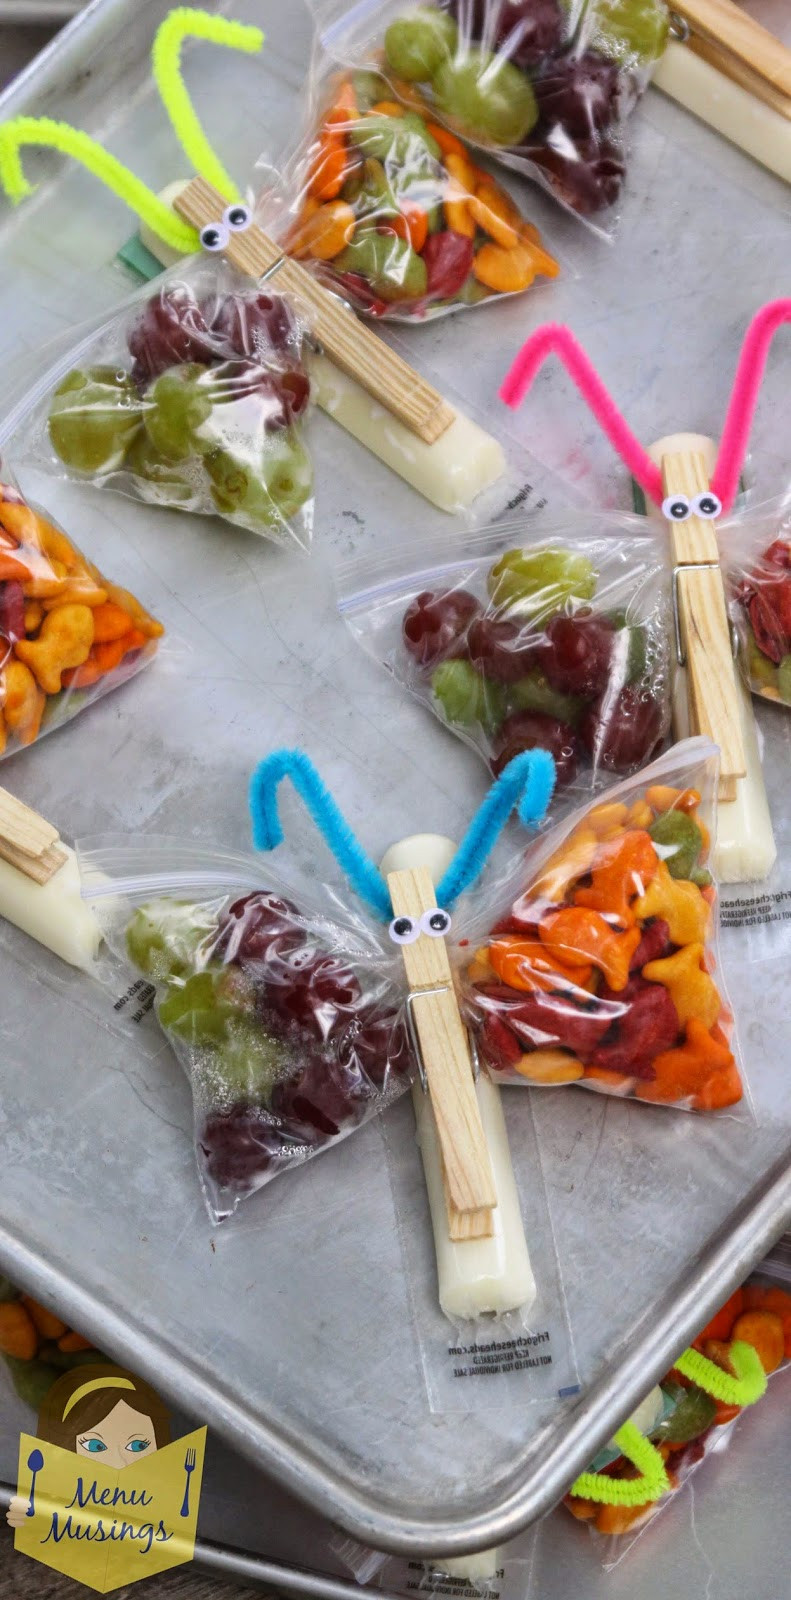 Healthy Bagged Snacks 20 Best Menu Musings Of A Modern American Mom butterfly Snack Bags